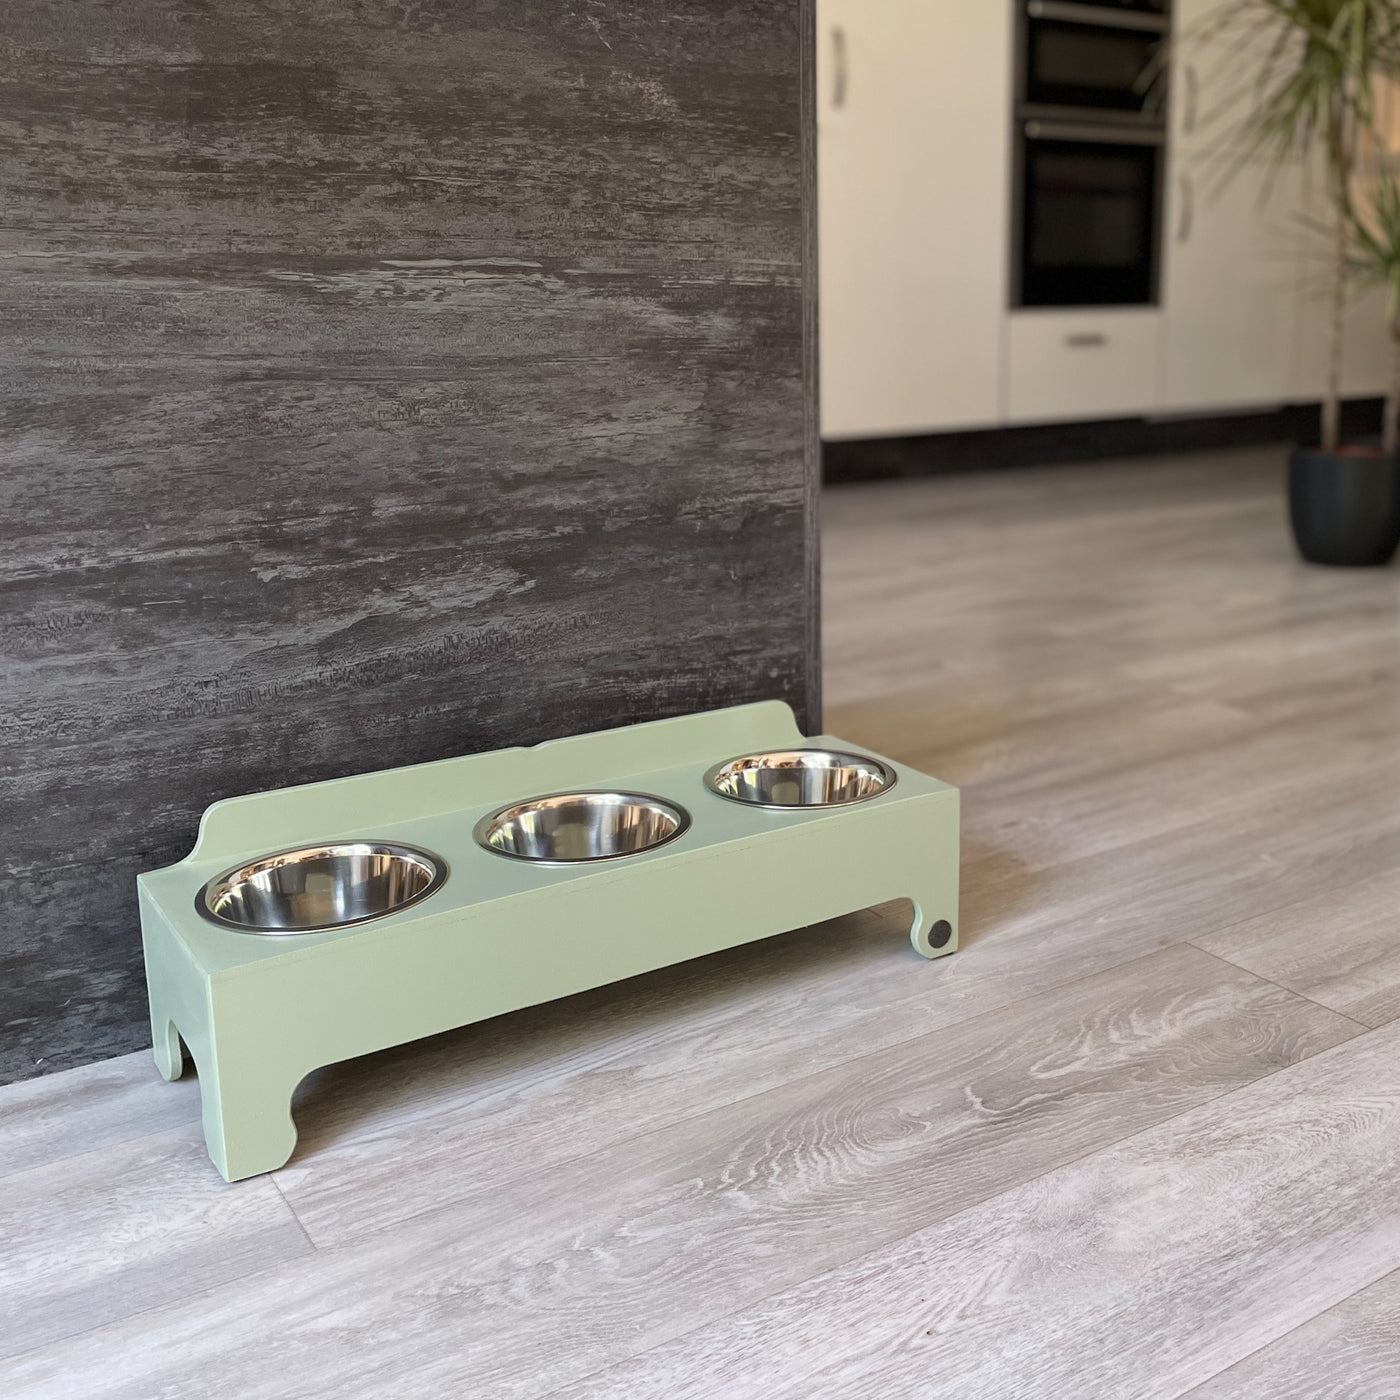 Medium raised triple-bowl dog feeding stand in soft green.